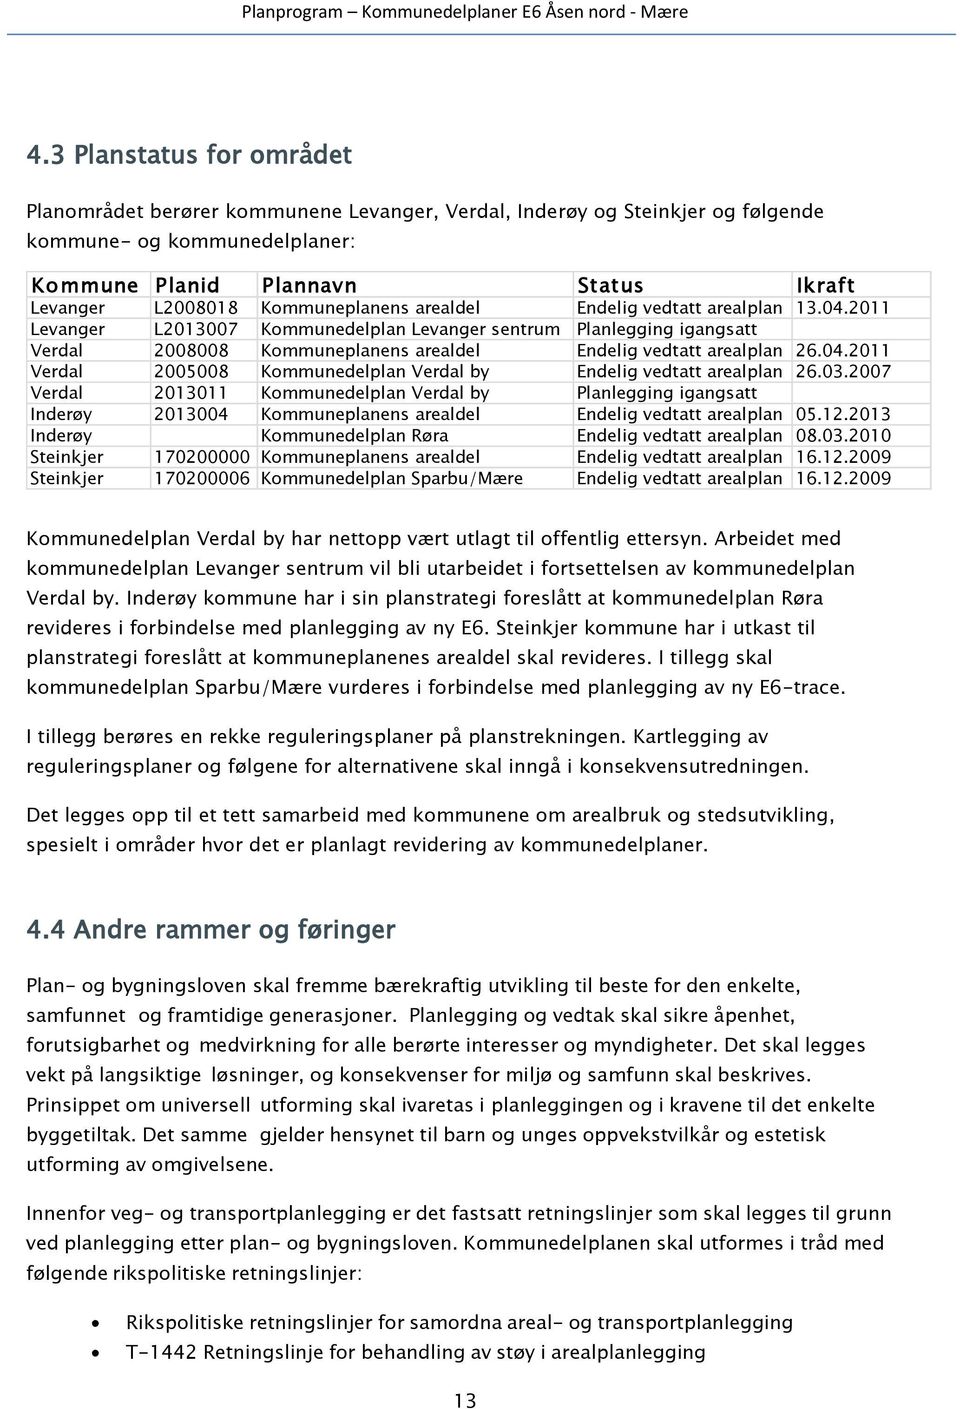 2011 Levanger L2013007 Kommunedelplan Levanger sentrum Planlegging igangsatt Verdal 2008008 Kommuneplanens arealdel Endelig vedtatt arealplan 26.04.